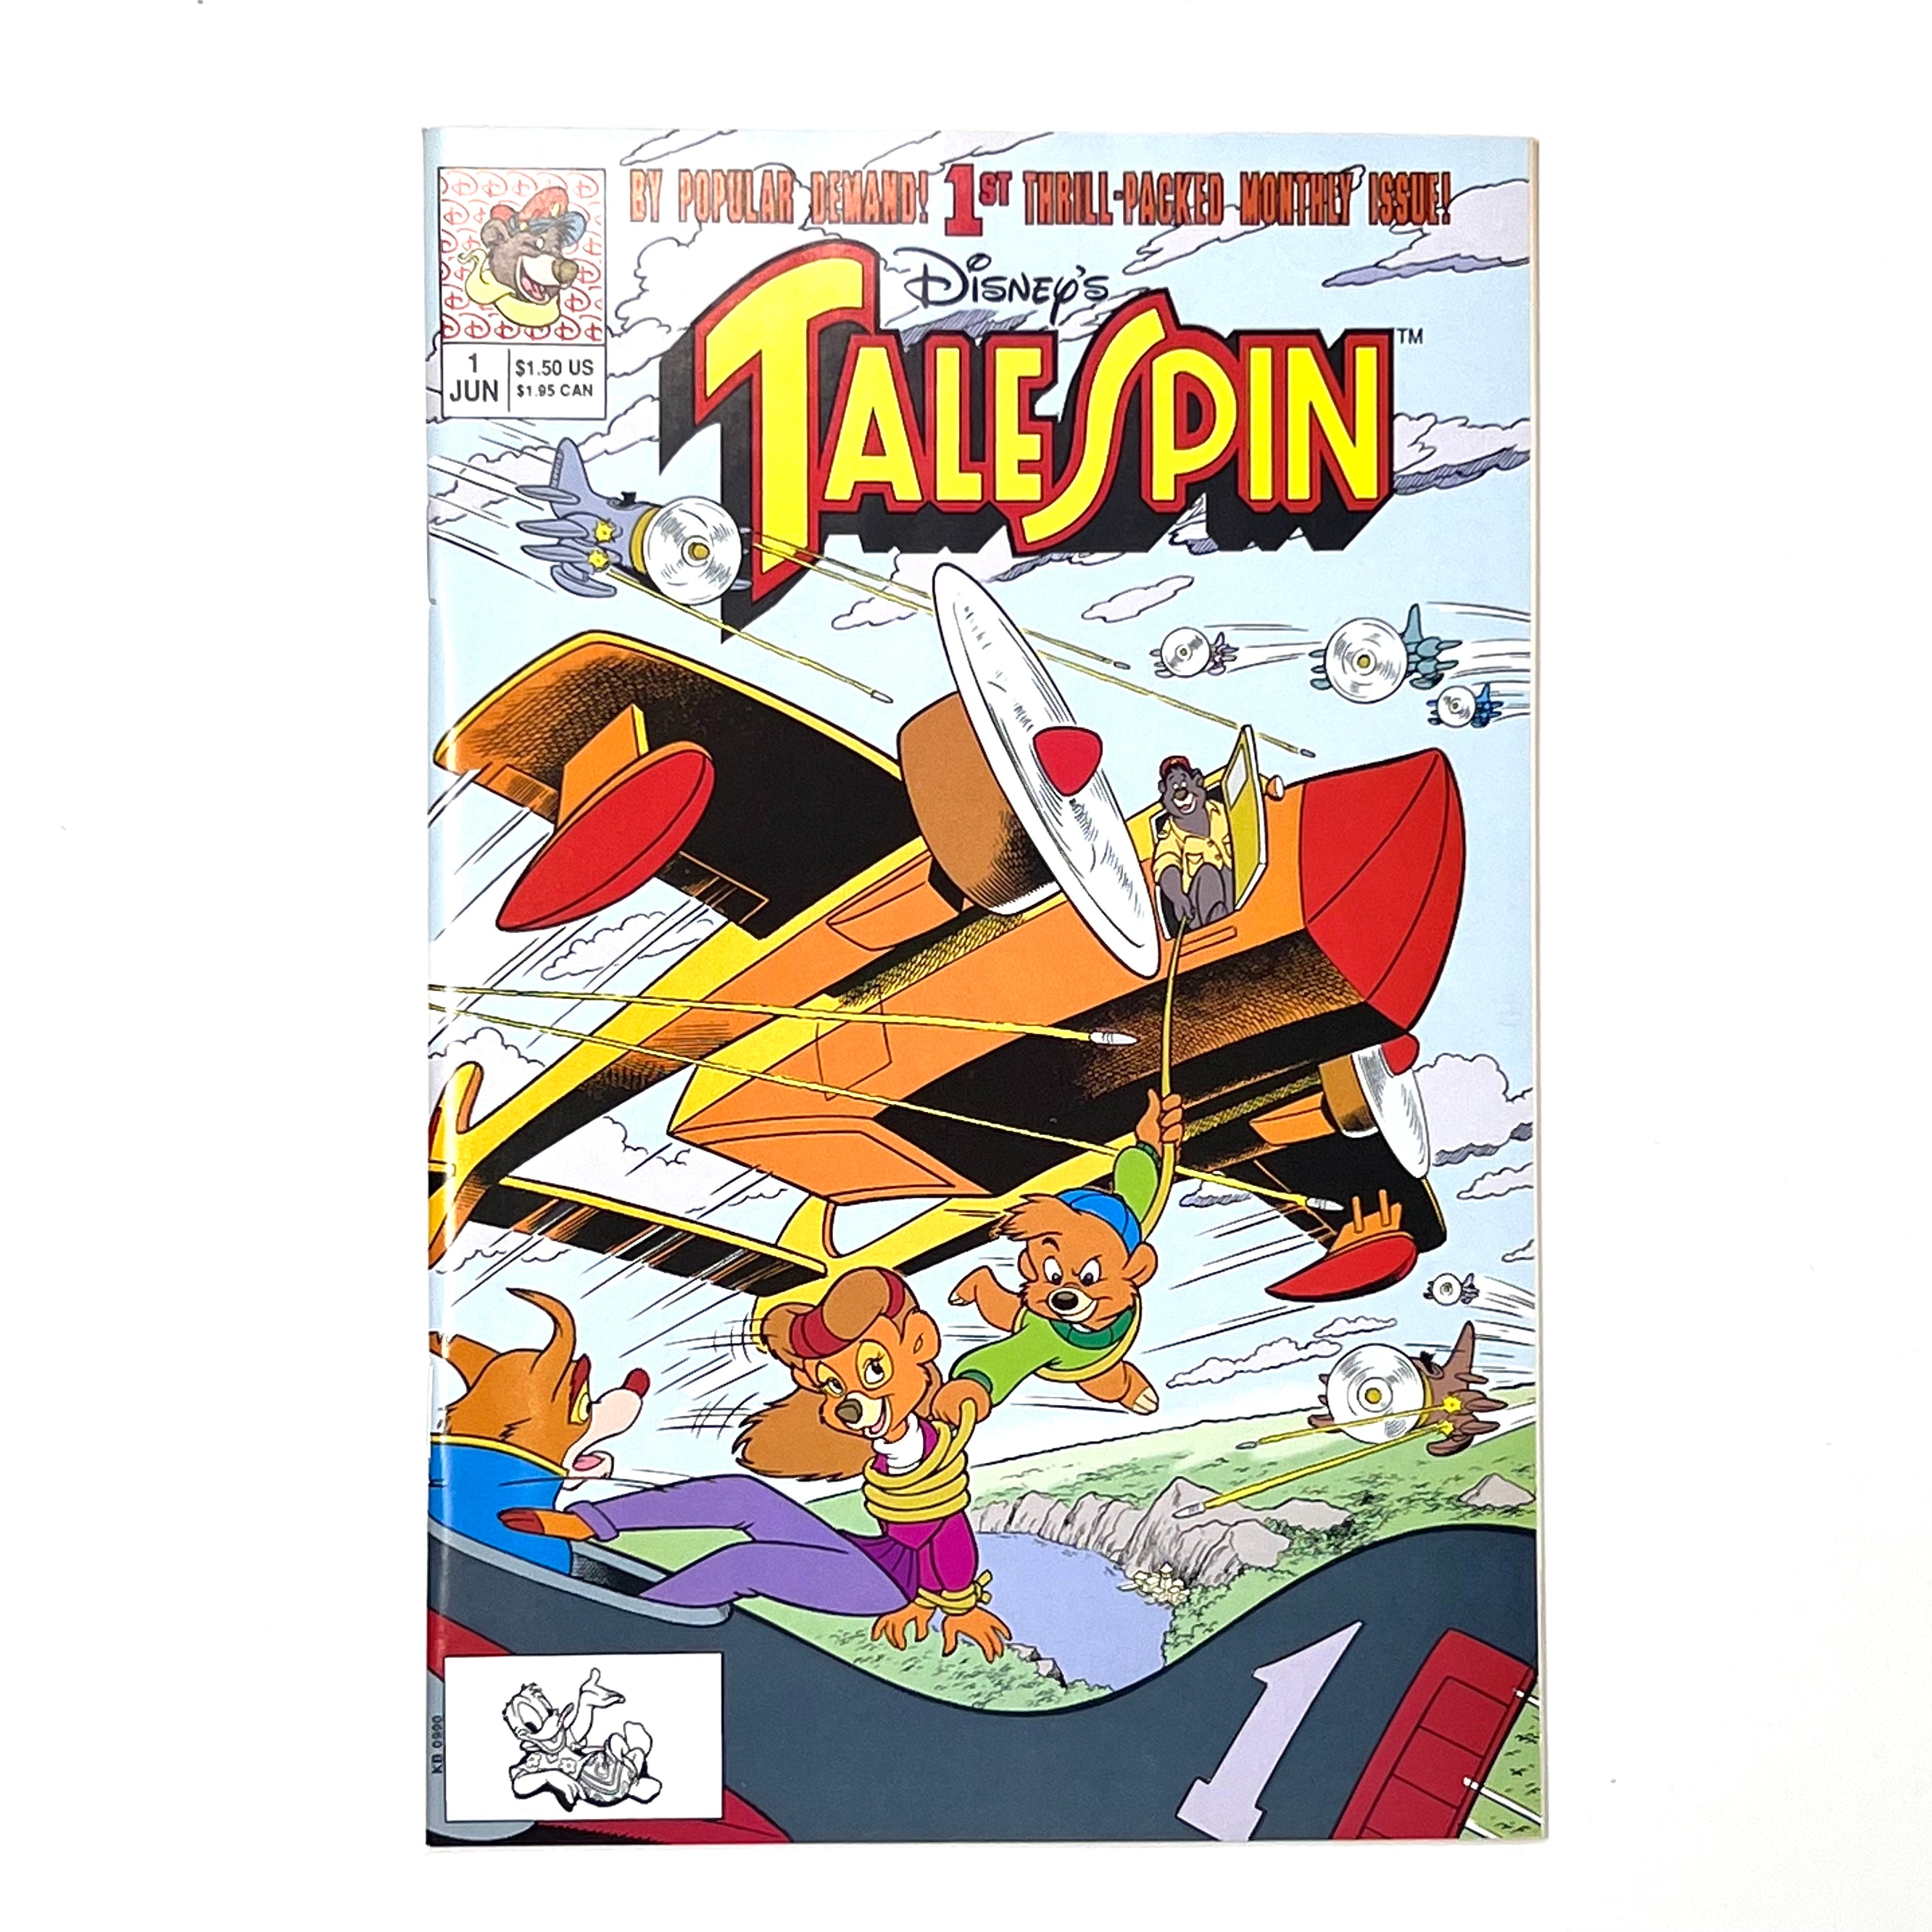 Talespin comic